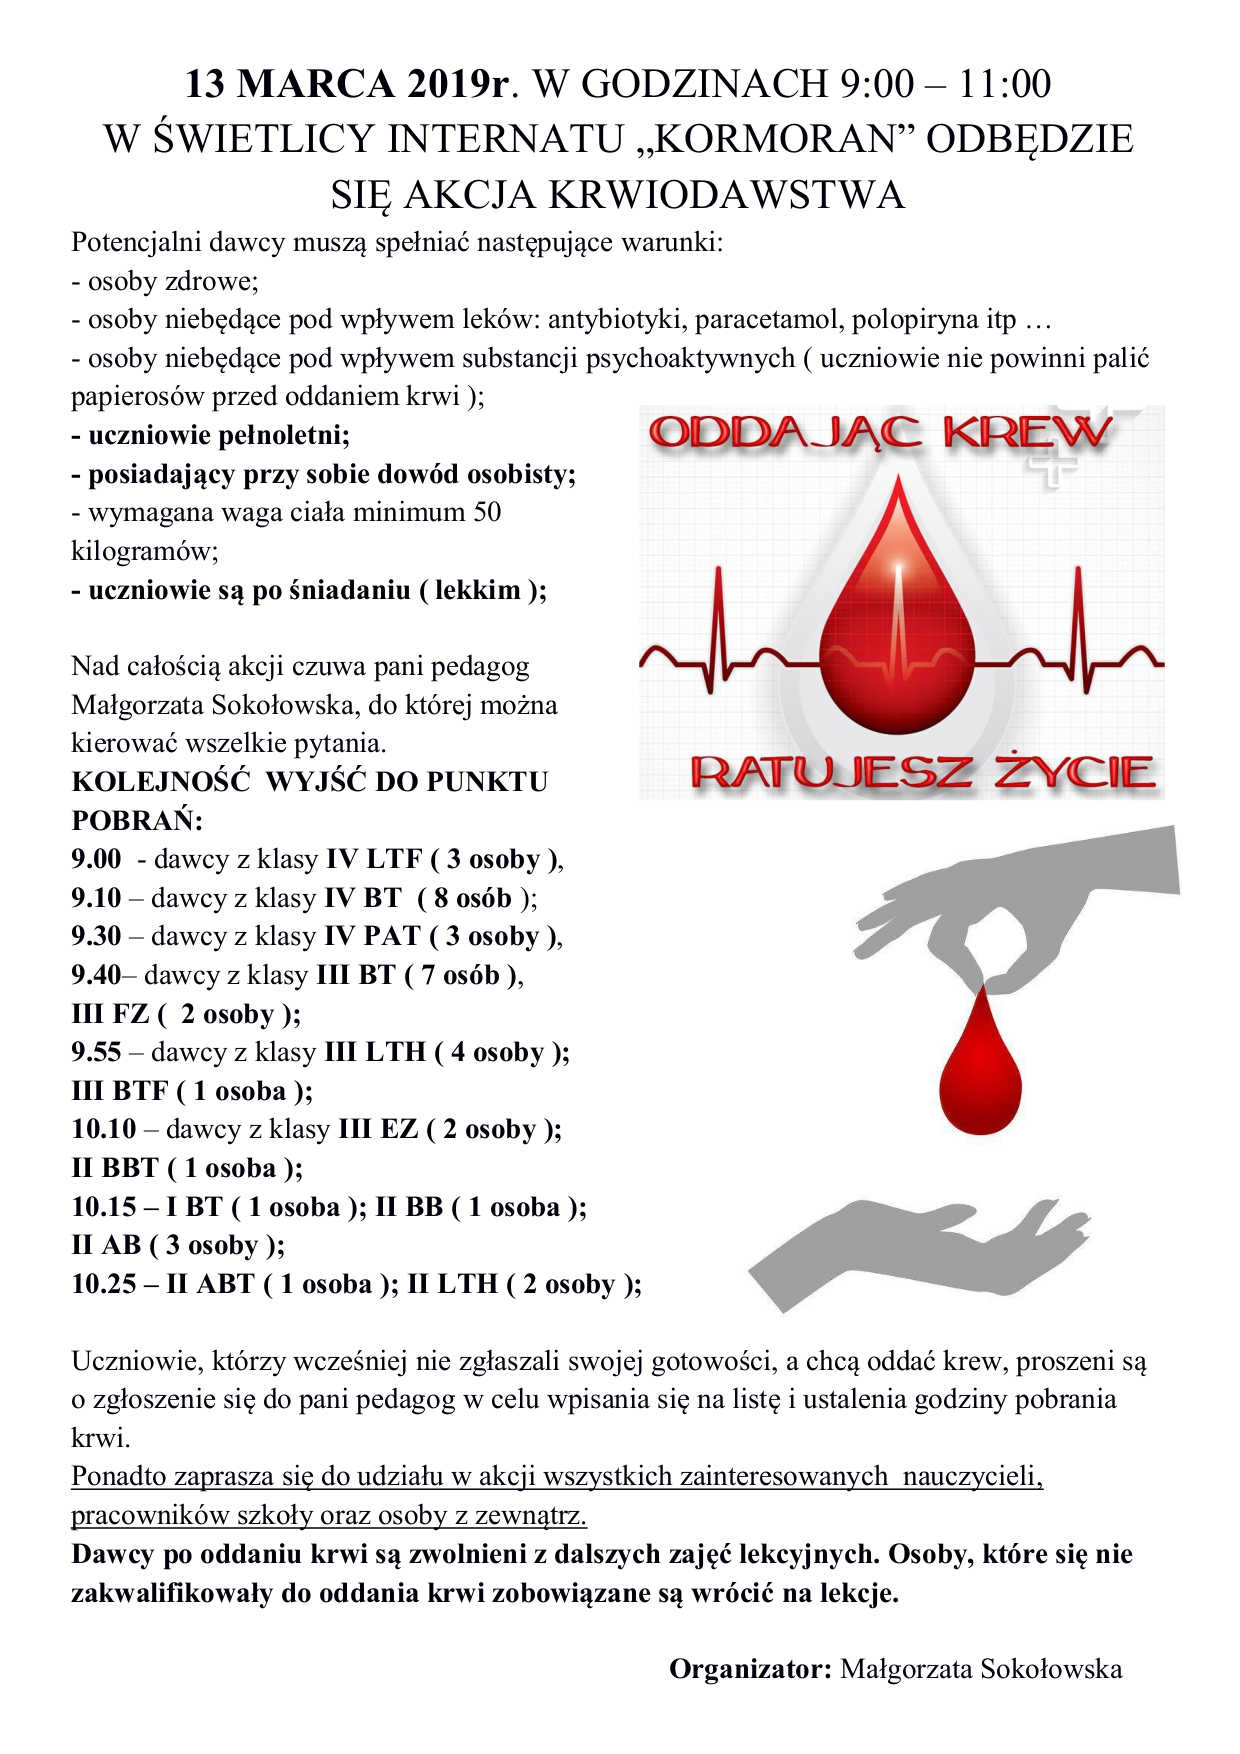 13 marca  2019r ogÅoszenie krwiodawstwa